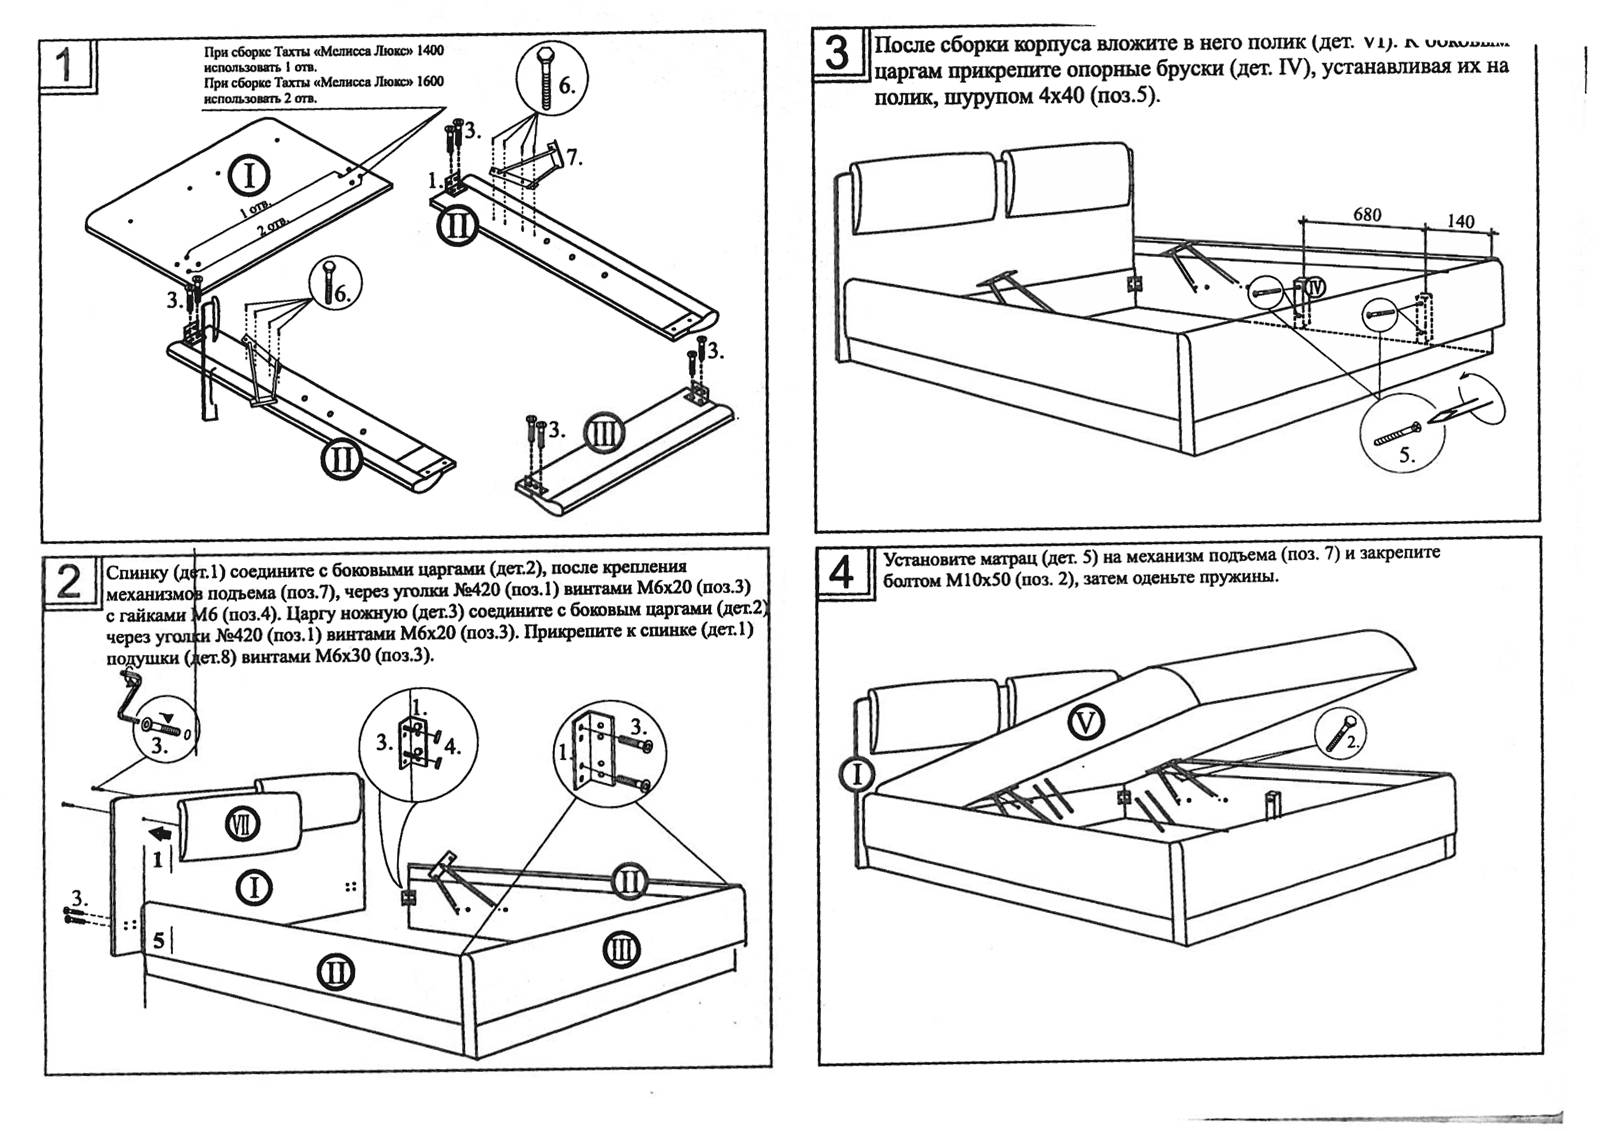 Пошаговая инструкция, как собрать двуспальную кровать и избежать ошибок